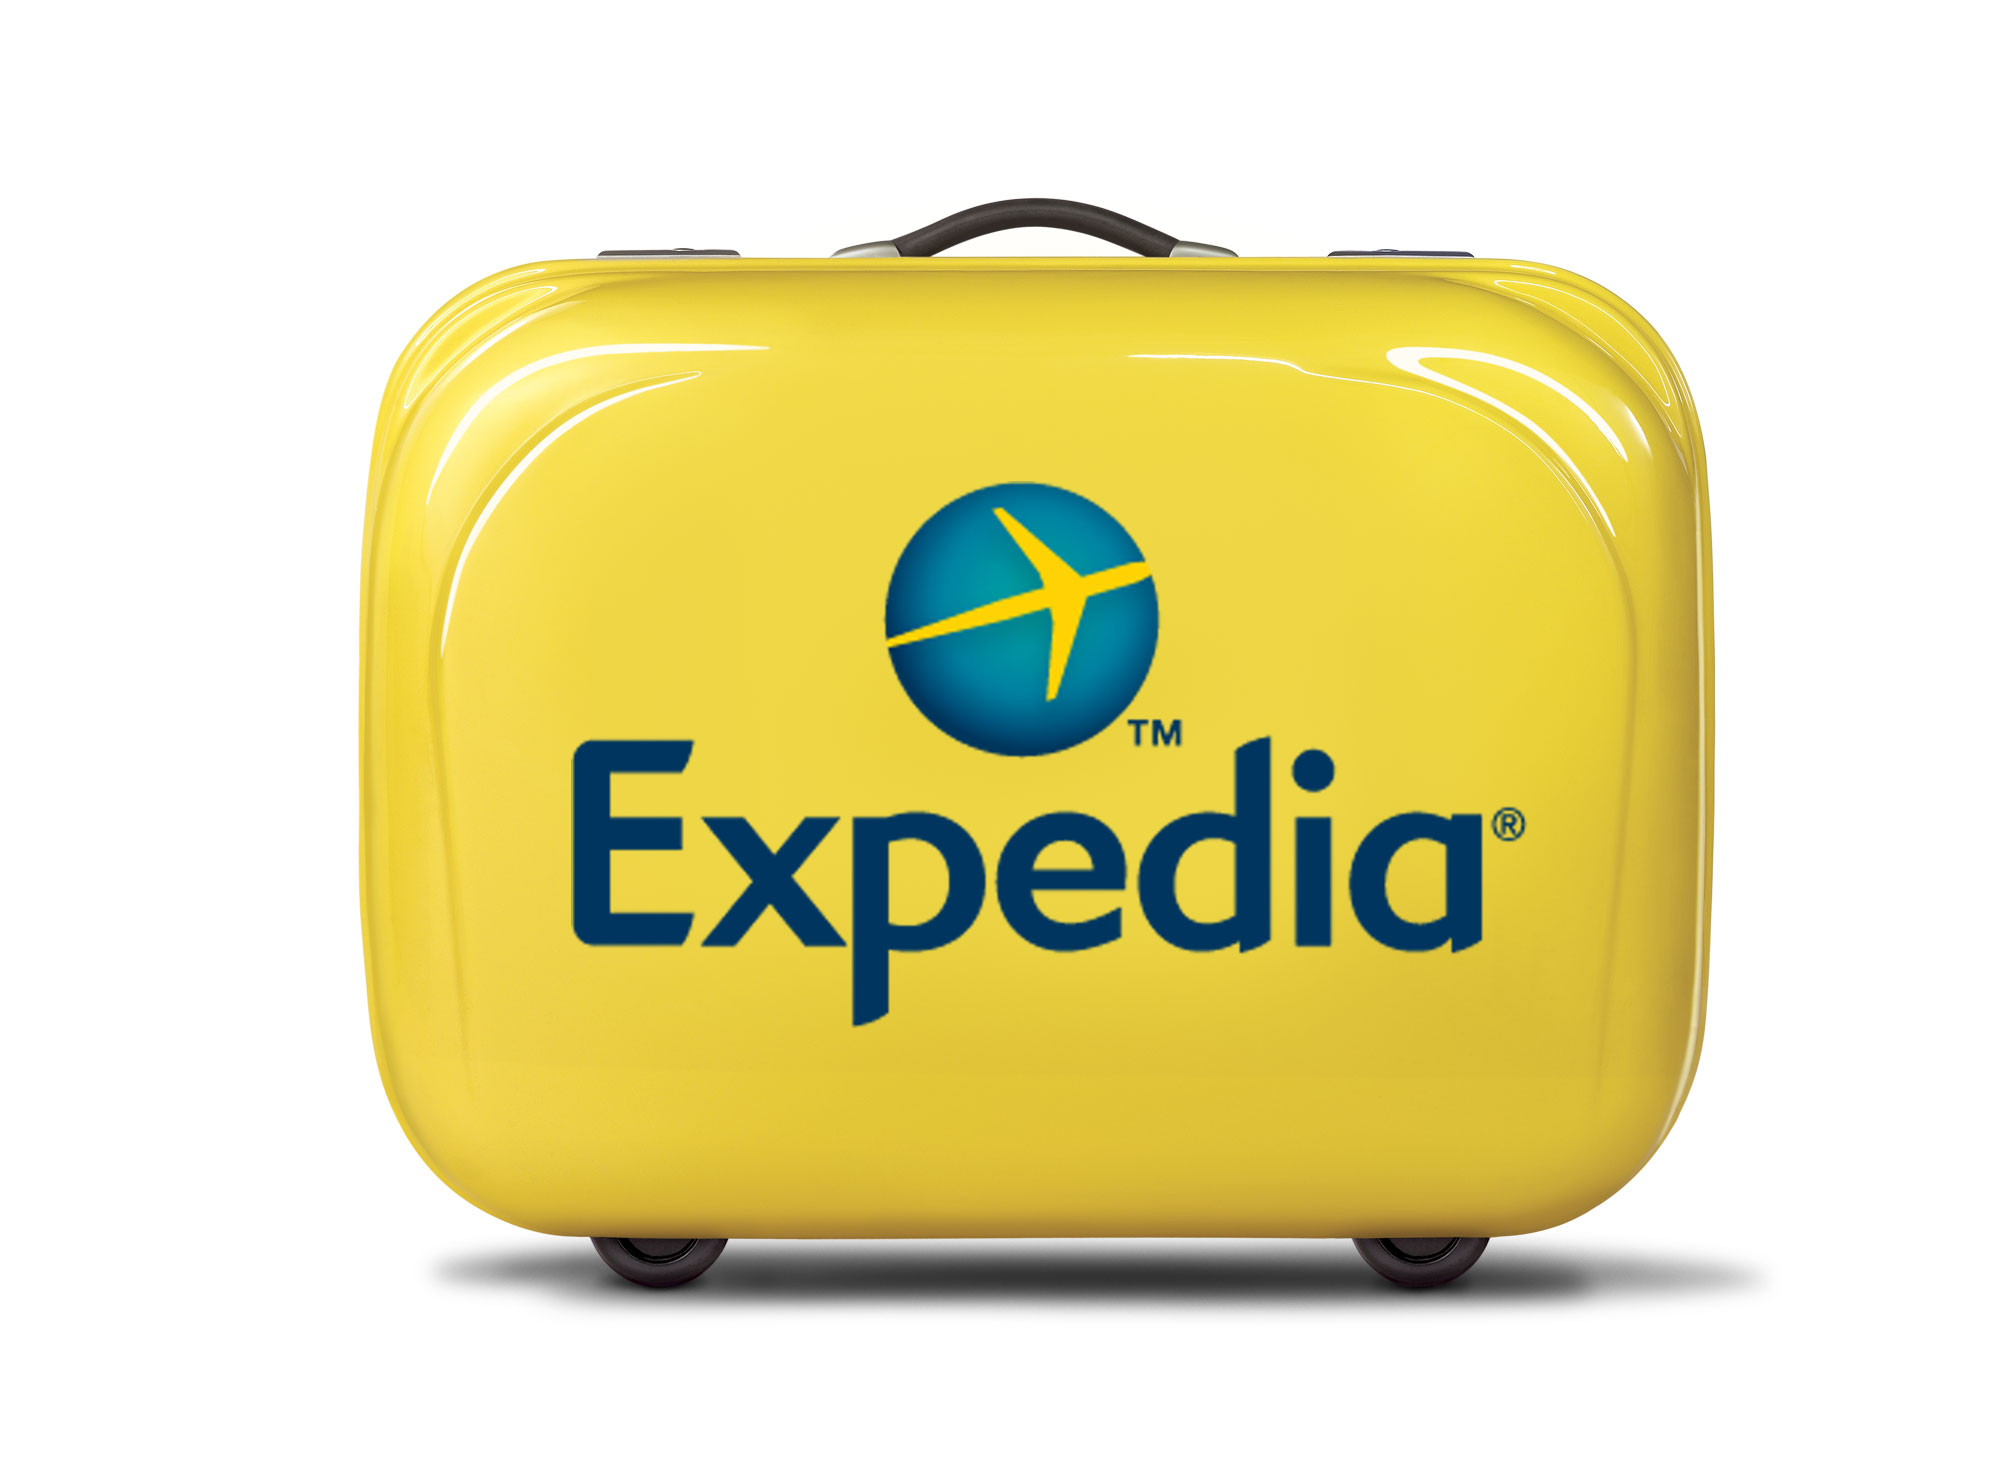 Expedia suitcase |SUPERADRIANME.com